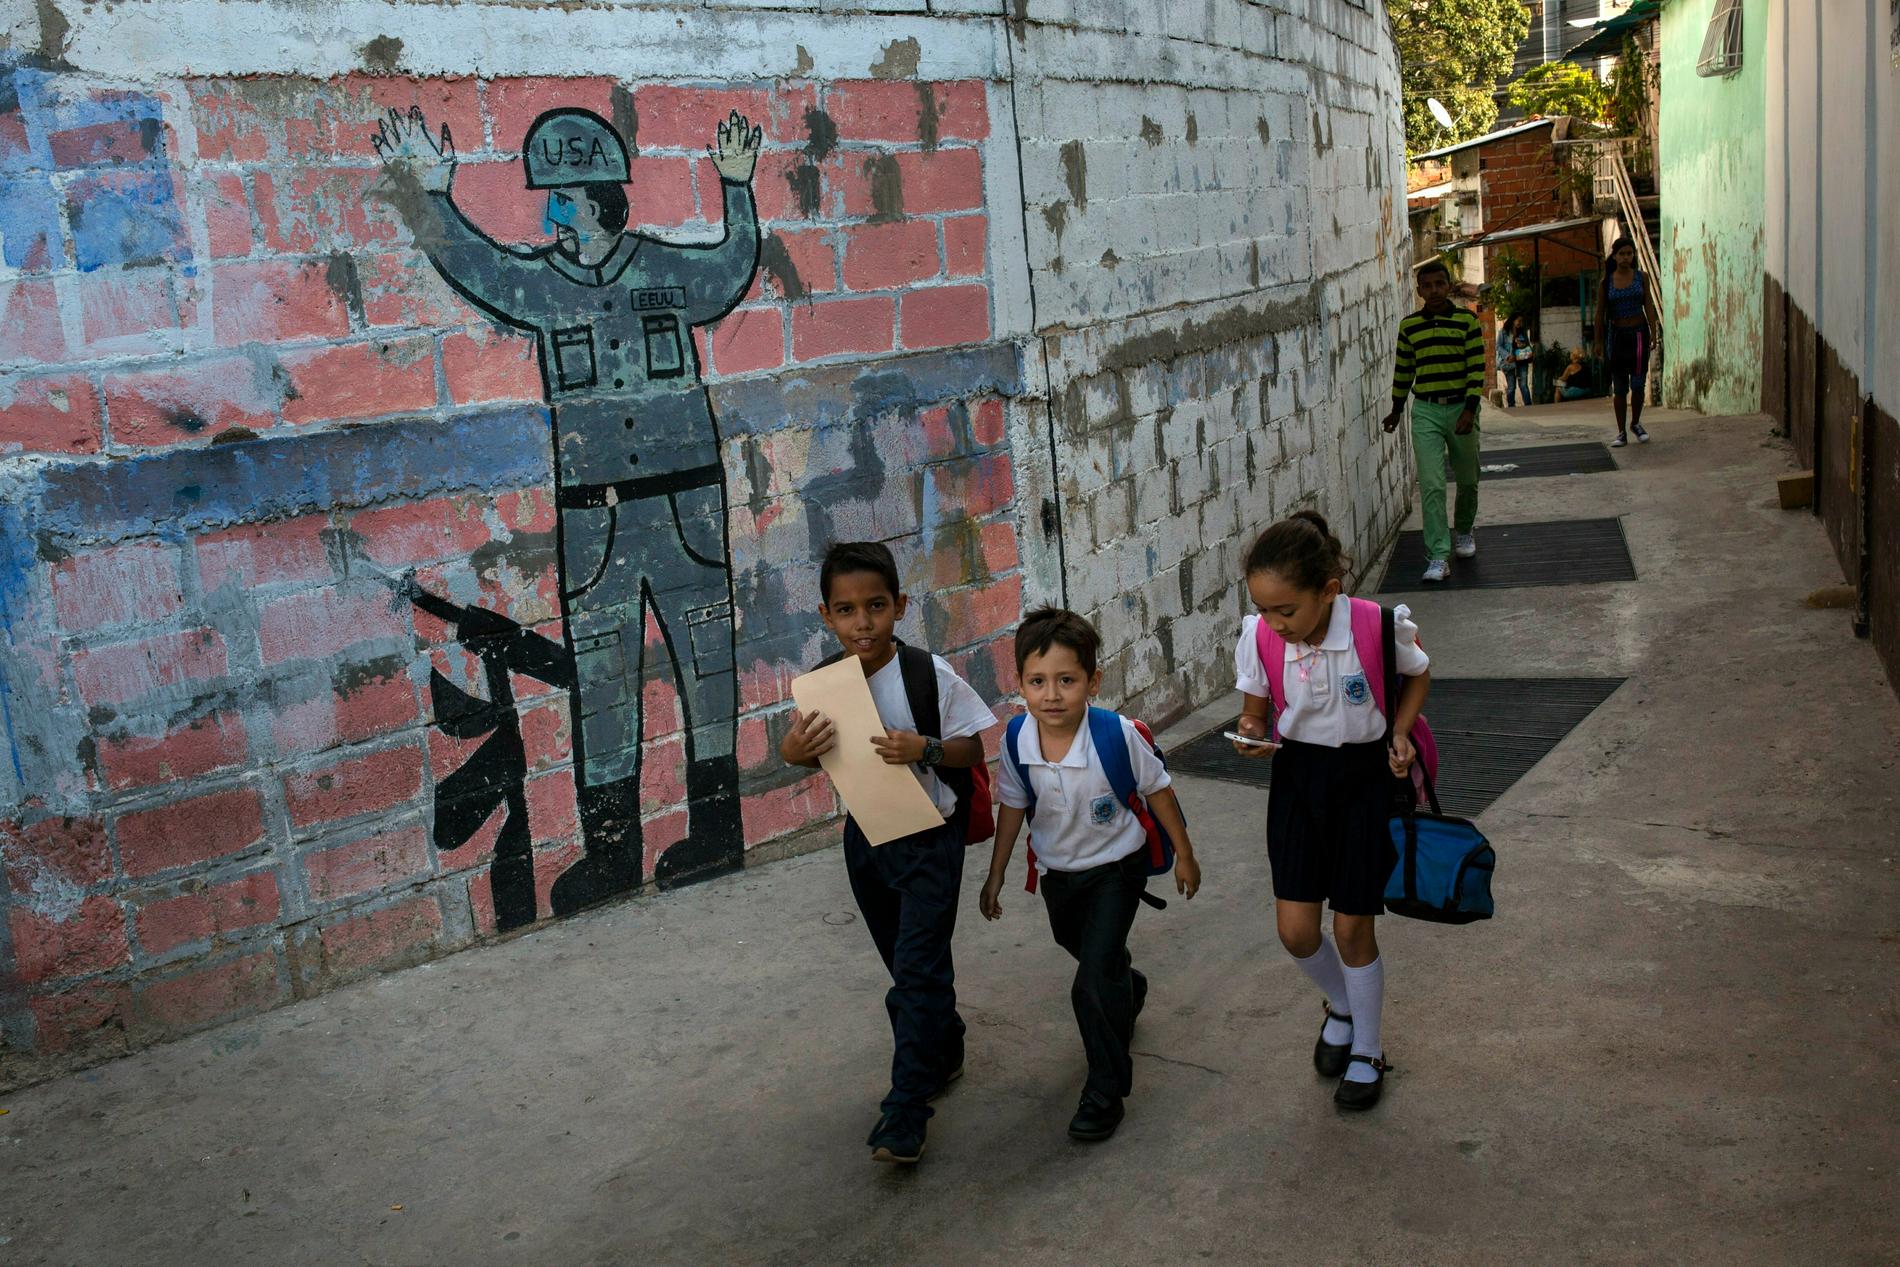 Skolbarn i Caracas går förbi en målning föreställande en kapitulerande soldat från USA. Maduros anhängare i Venezuela beskriver försöken till maktskifte som en komplott från USA.